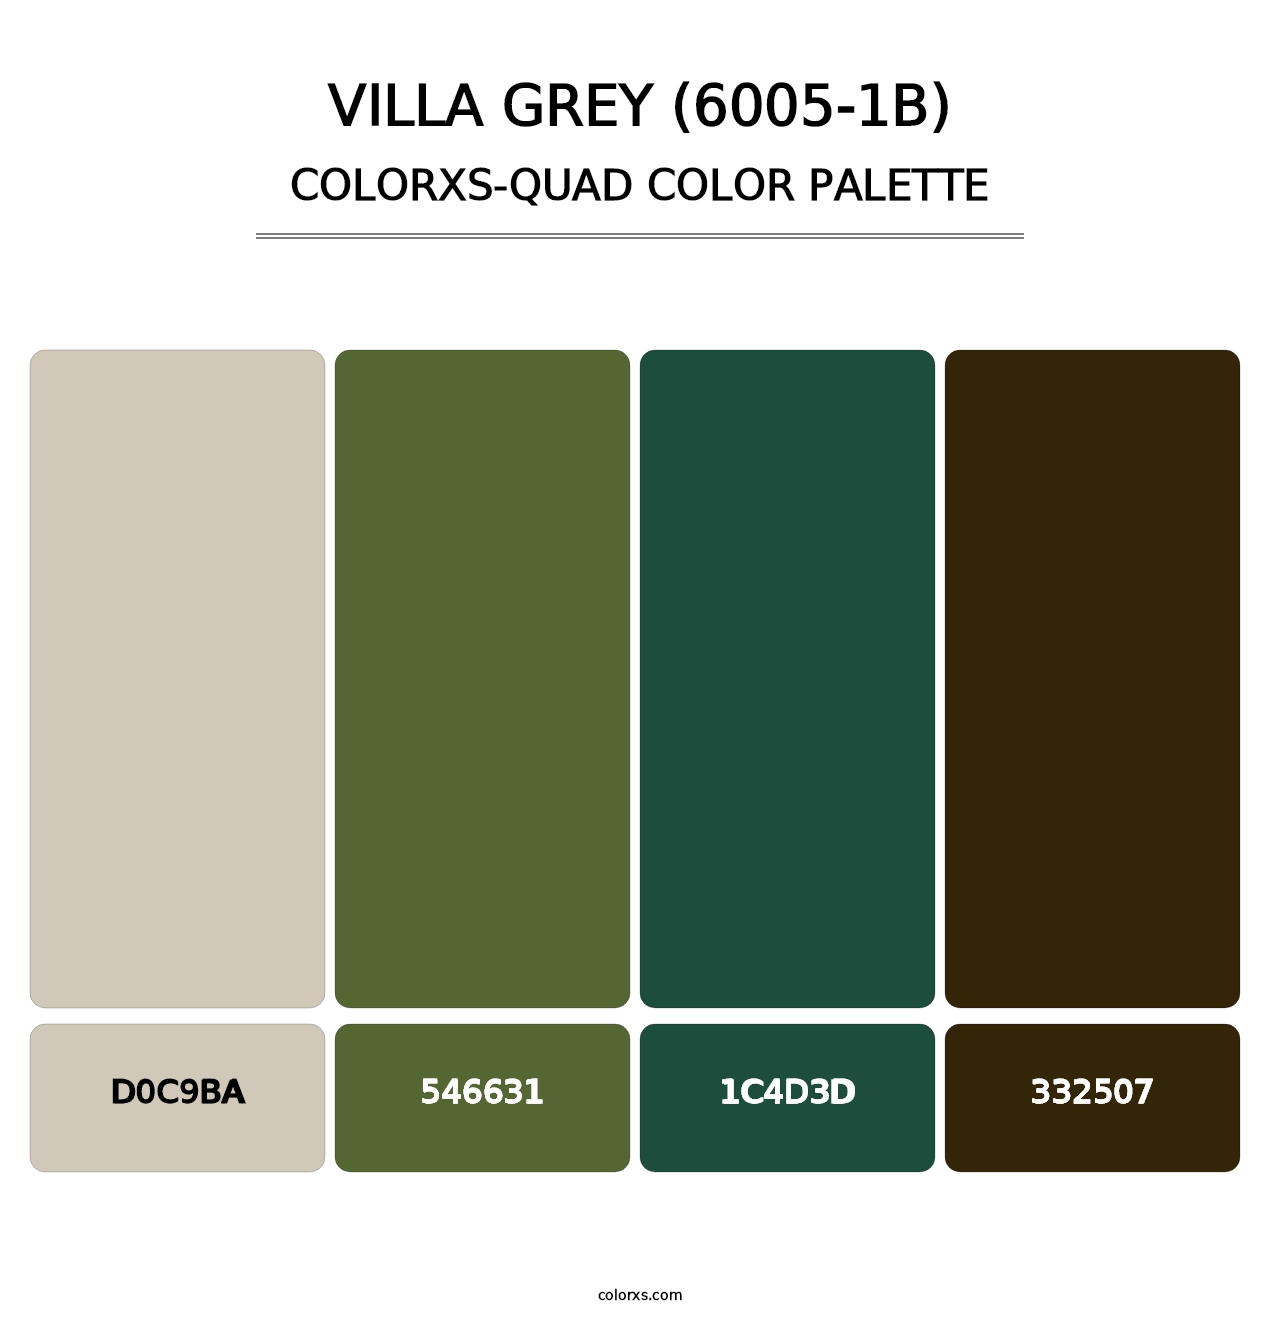 Villa Grey (6005-1B) - Colorxs Quad Palette